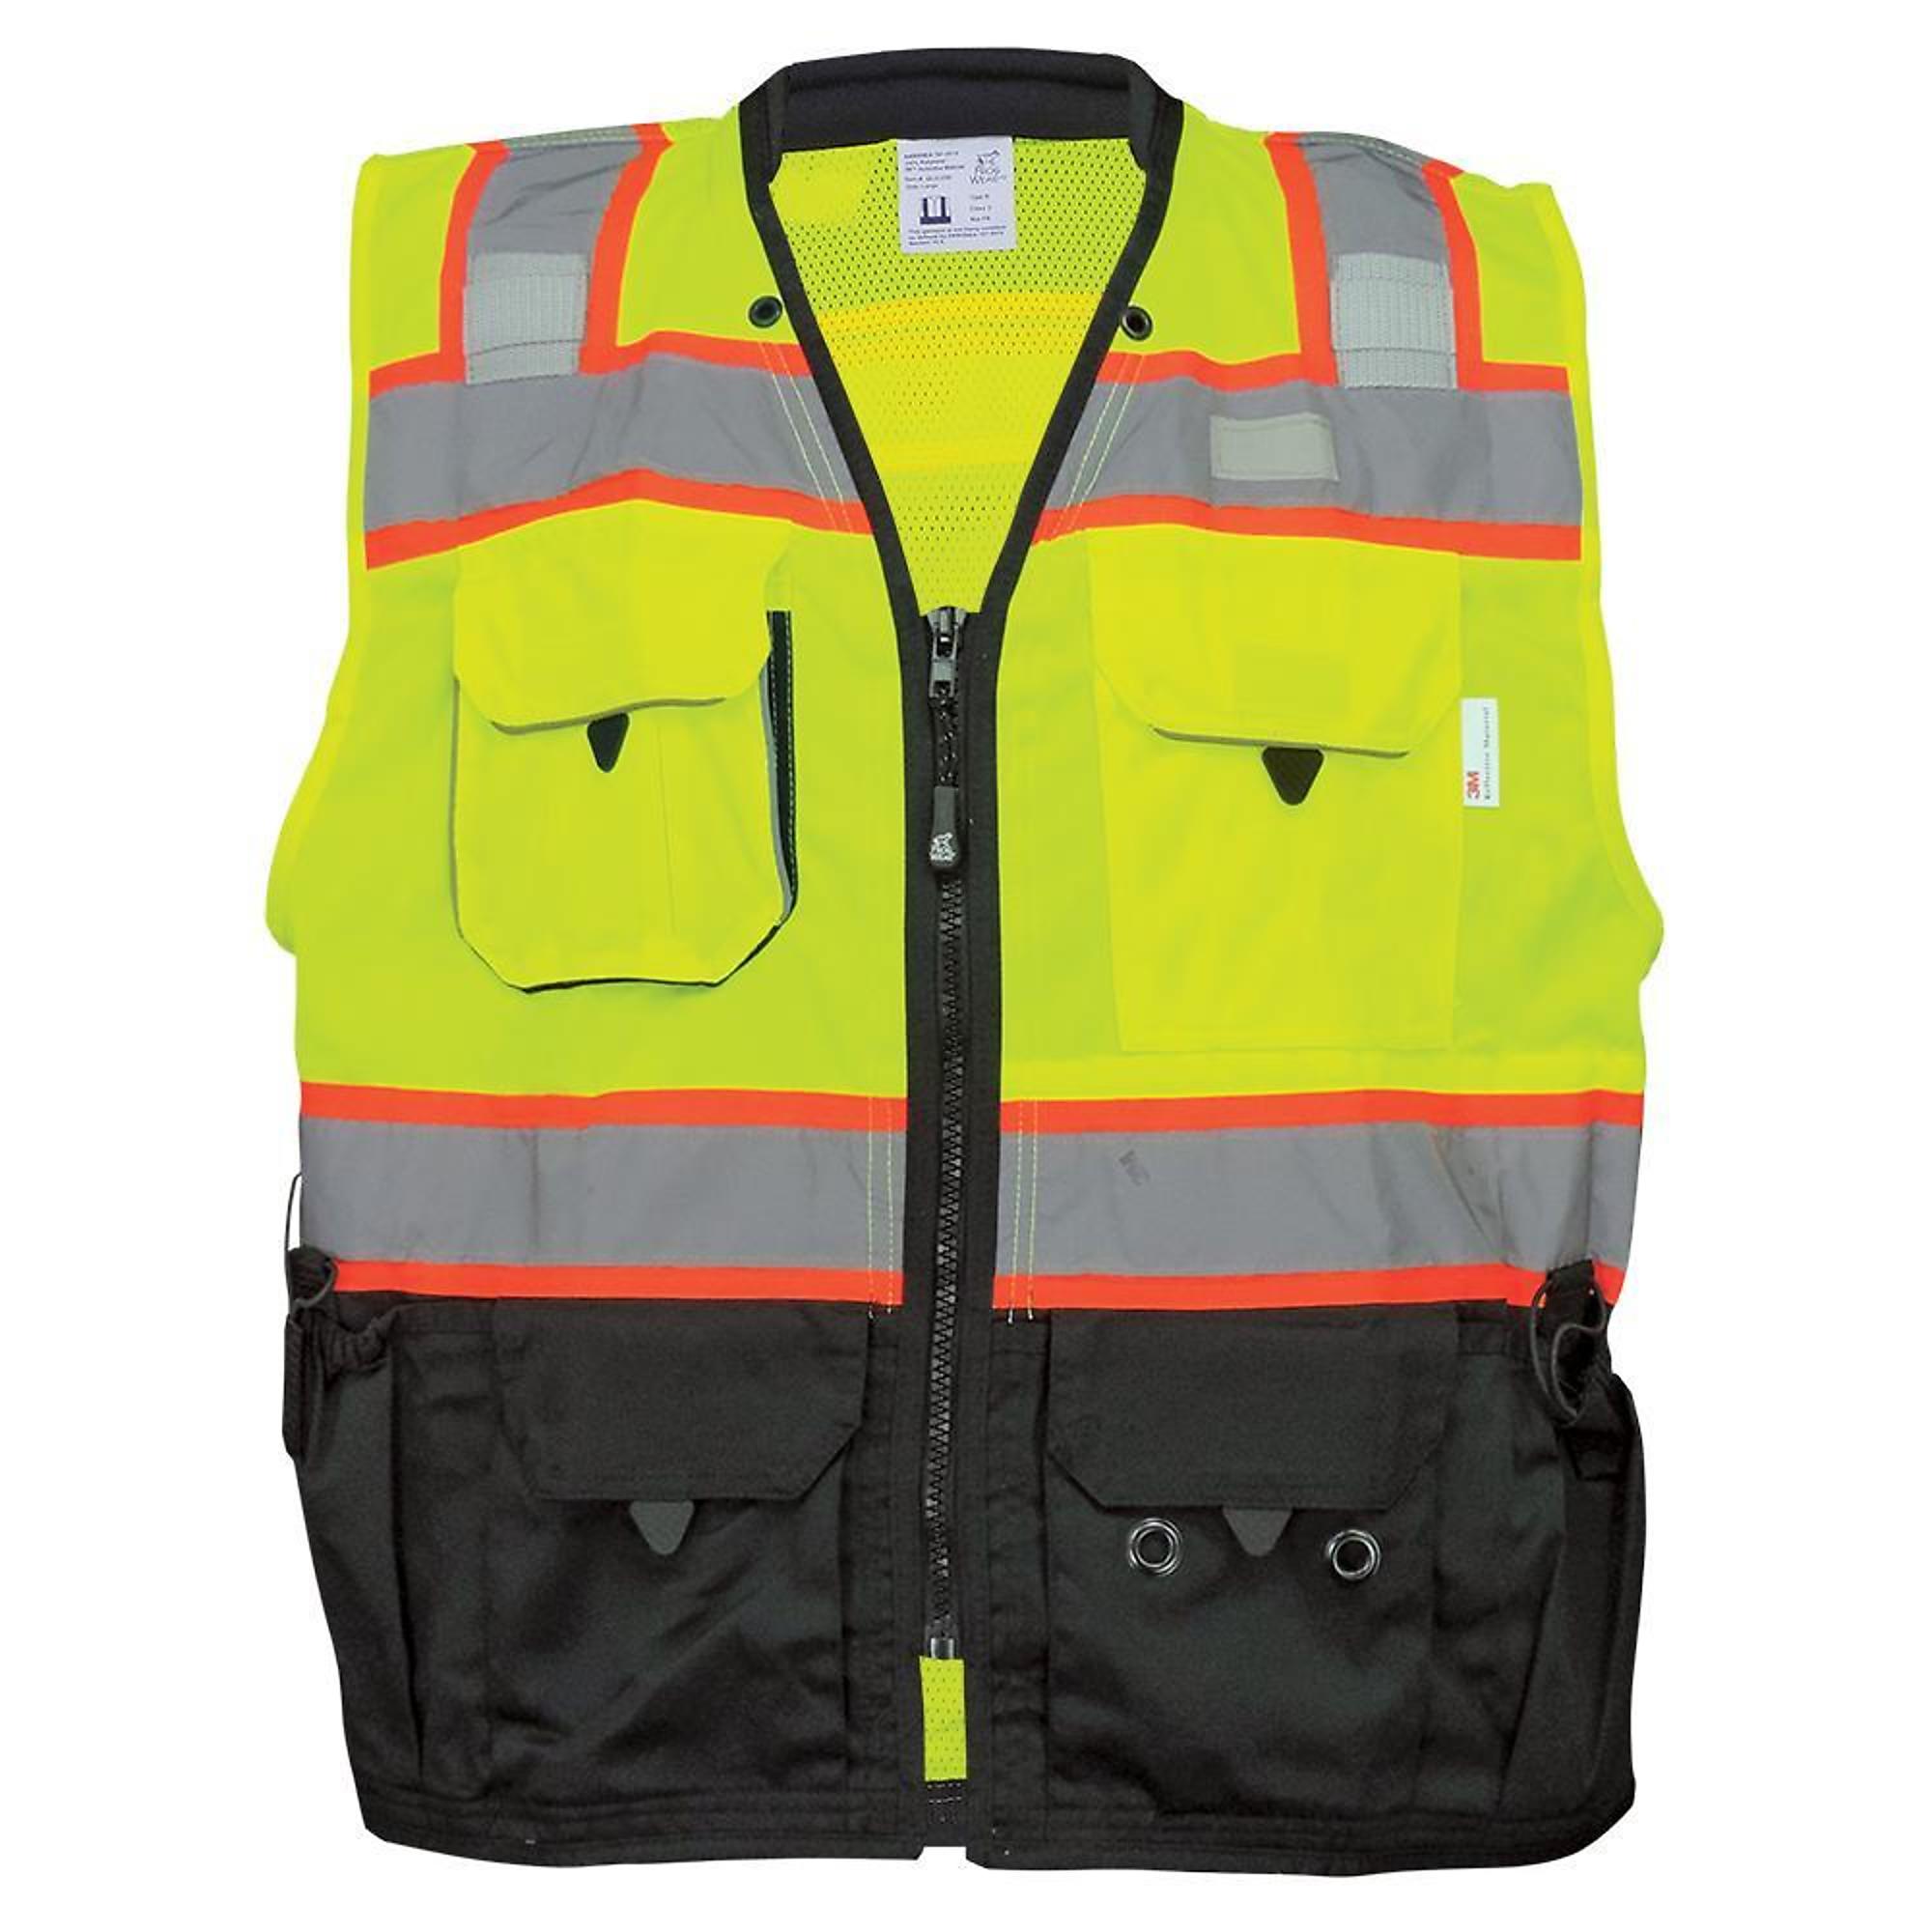 FrogWear Surveyors Safety Vest, M, Yellow/Green, Model GLO-099-M